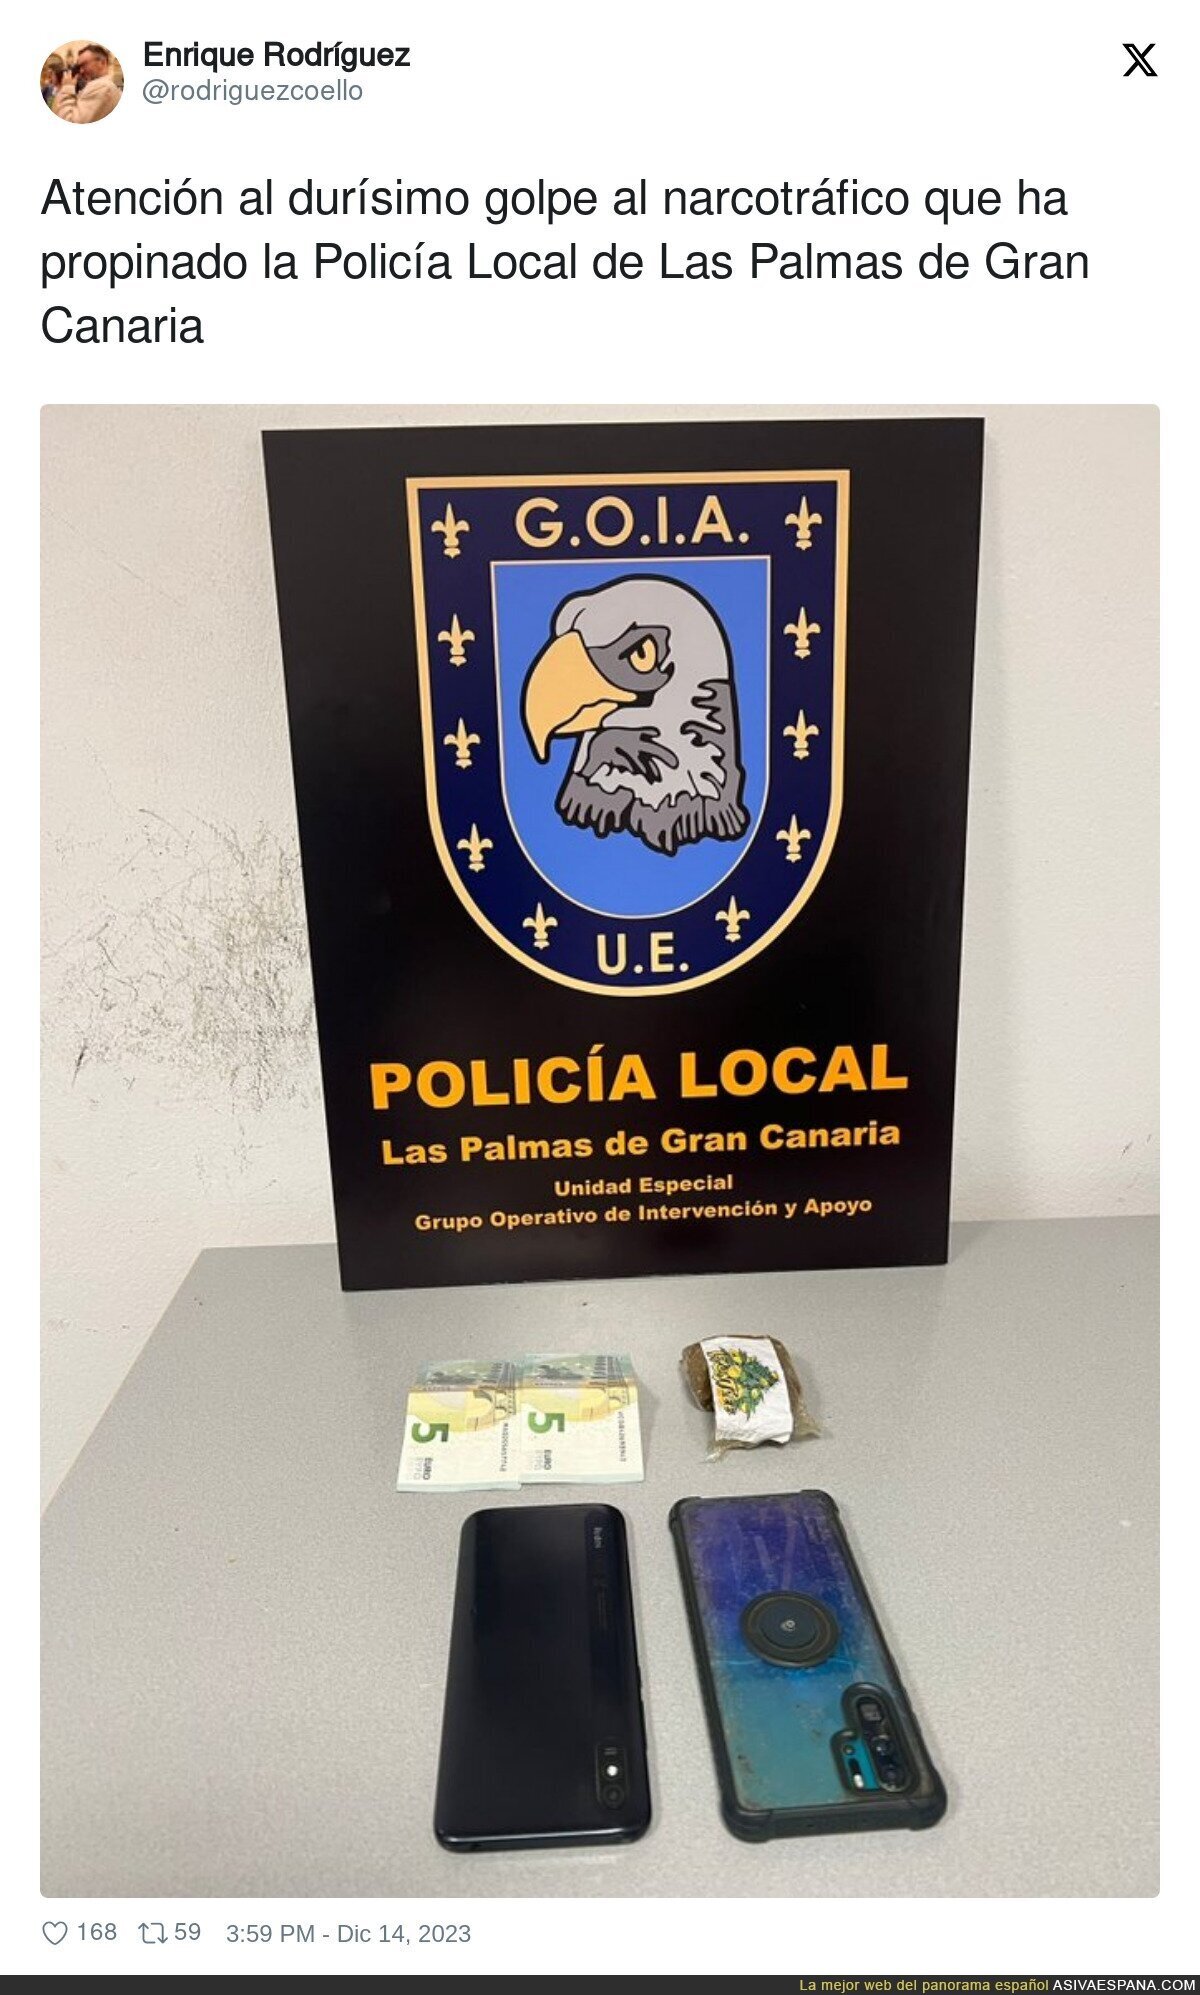 Bravo para la Policía Local de Las Palmas